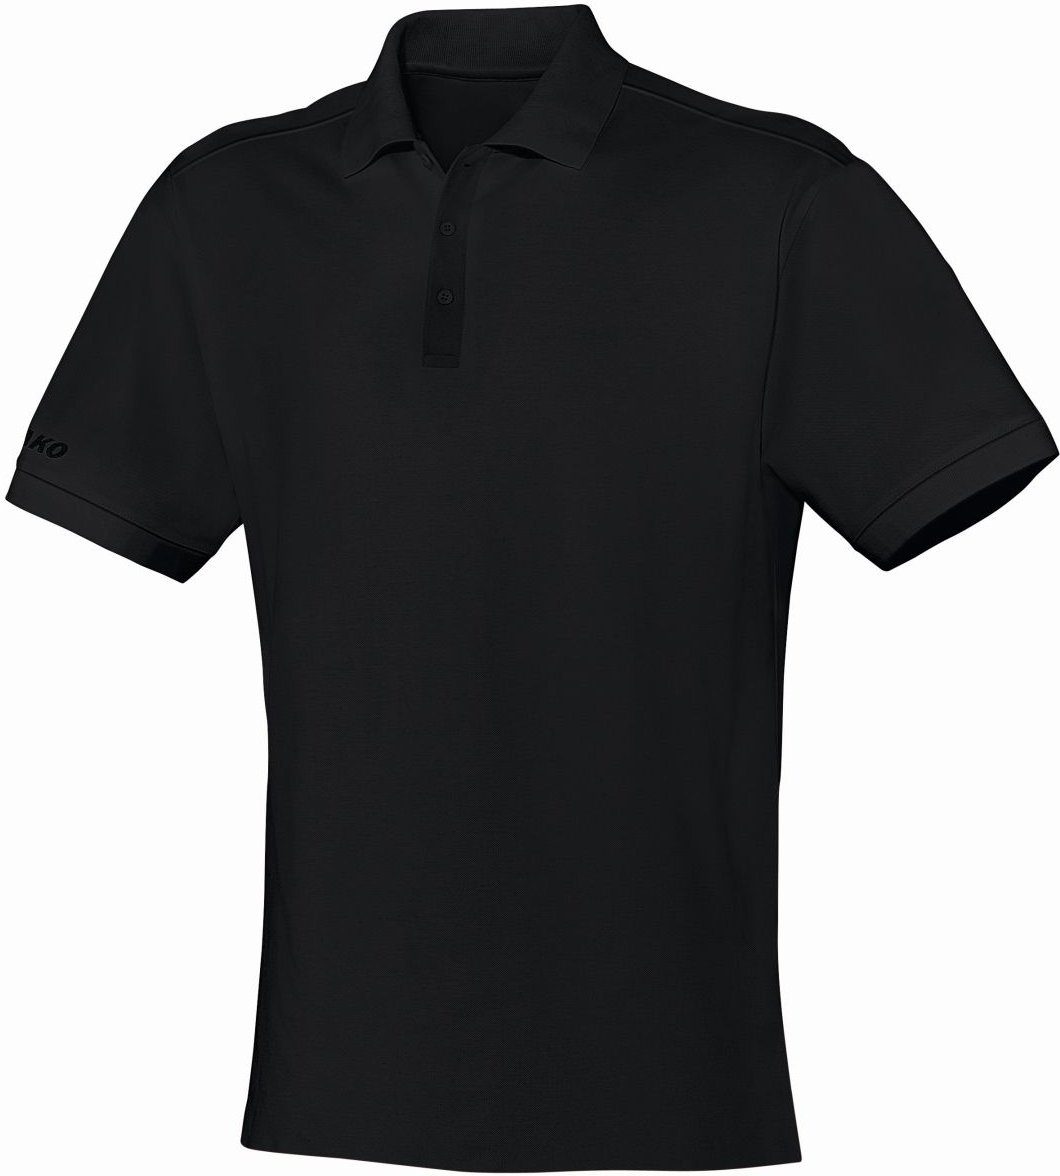 Jako Poloshirt Polo Classic m. Brusttasche schwarz/grau/weiss